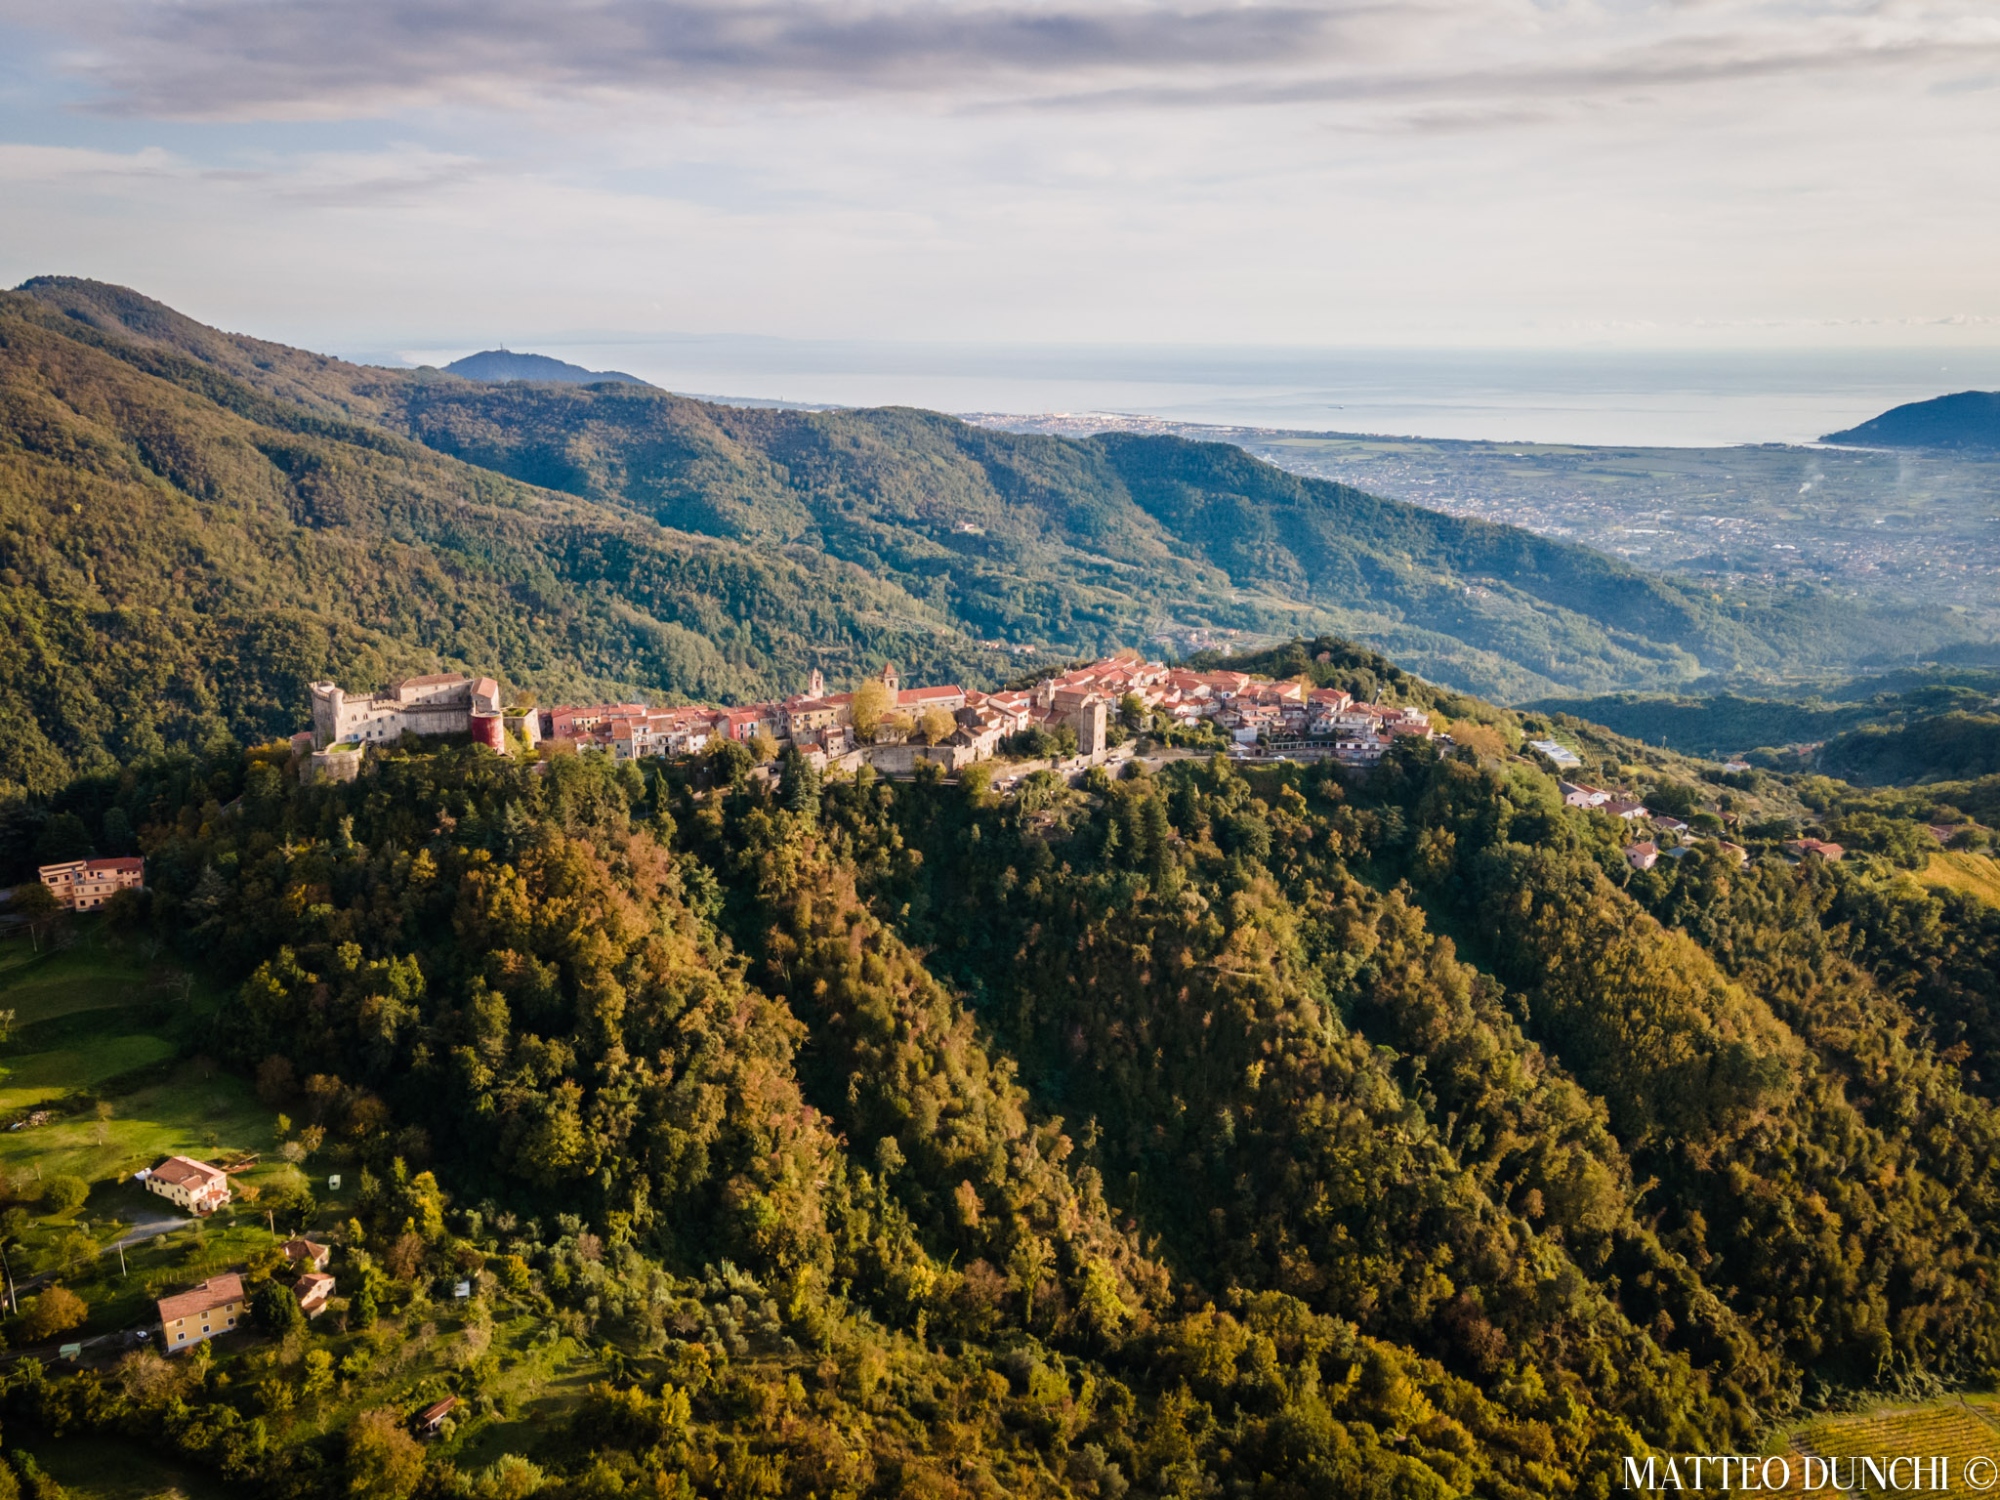 Top view of the Borgo di Fosdinovo